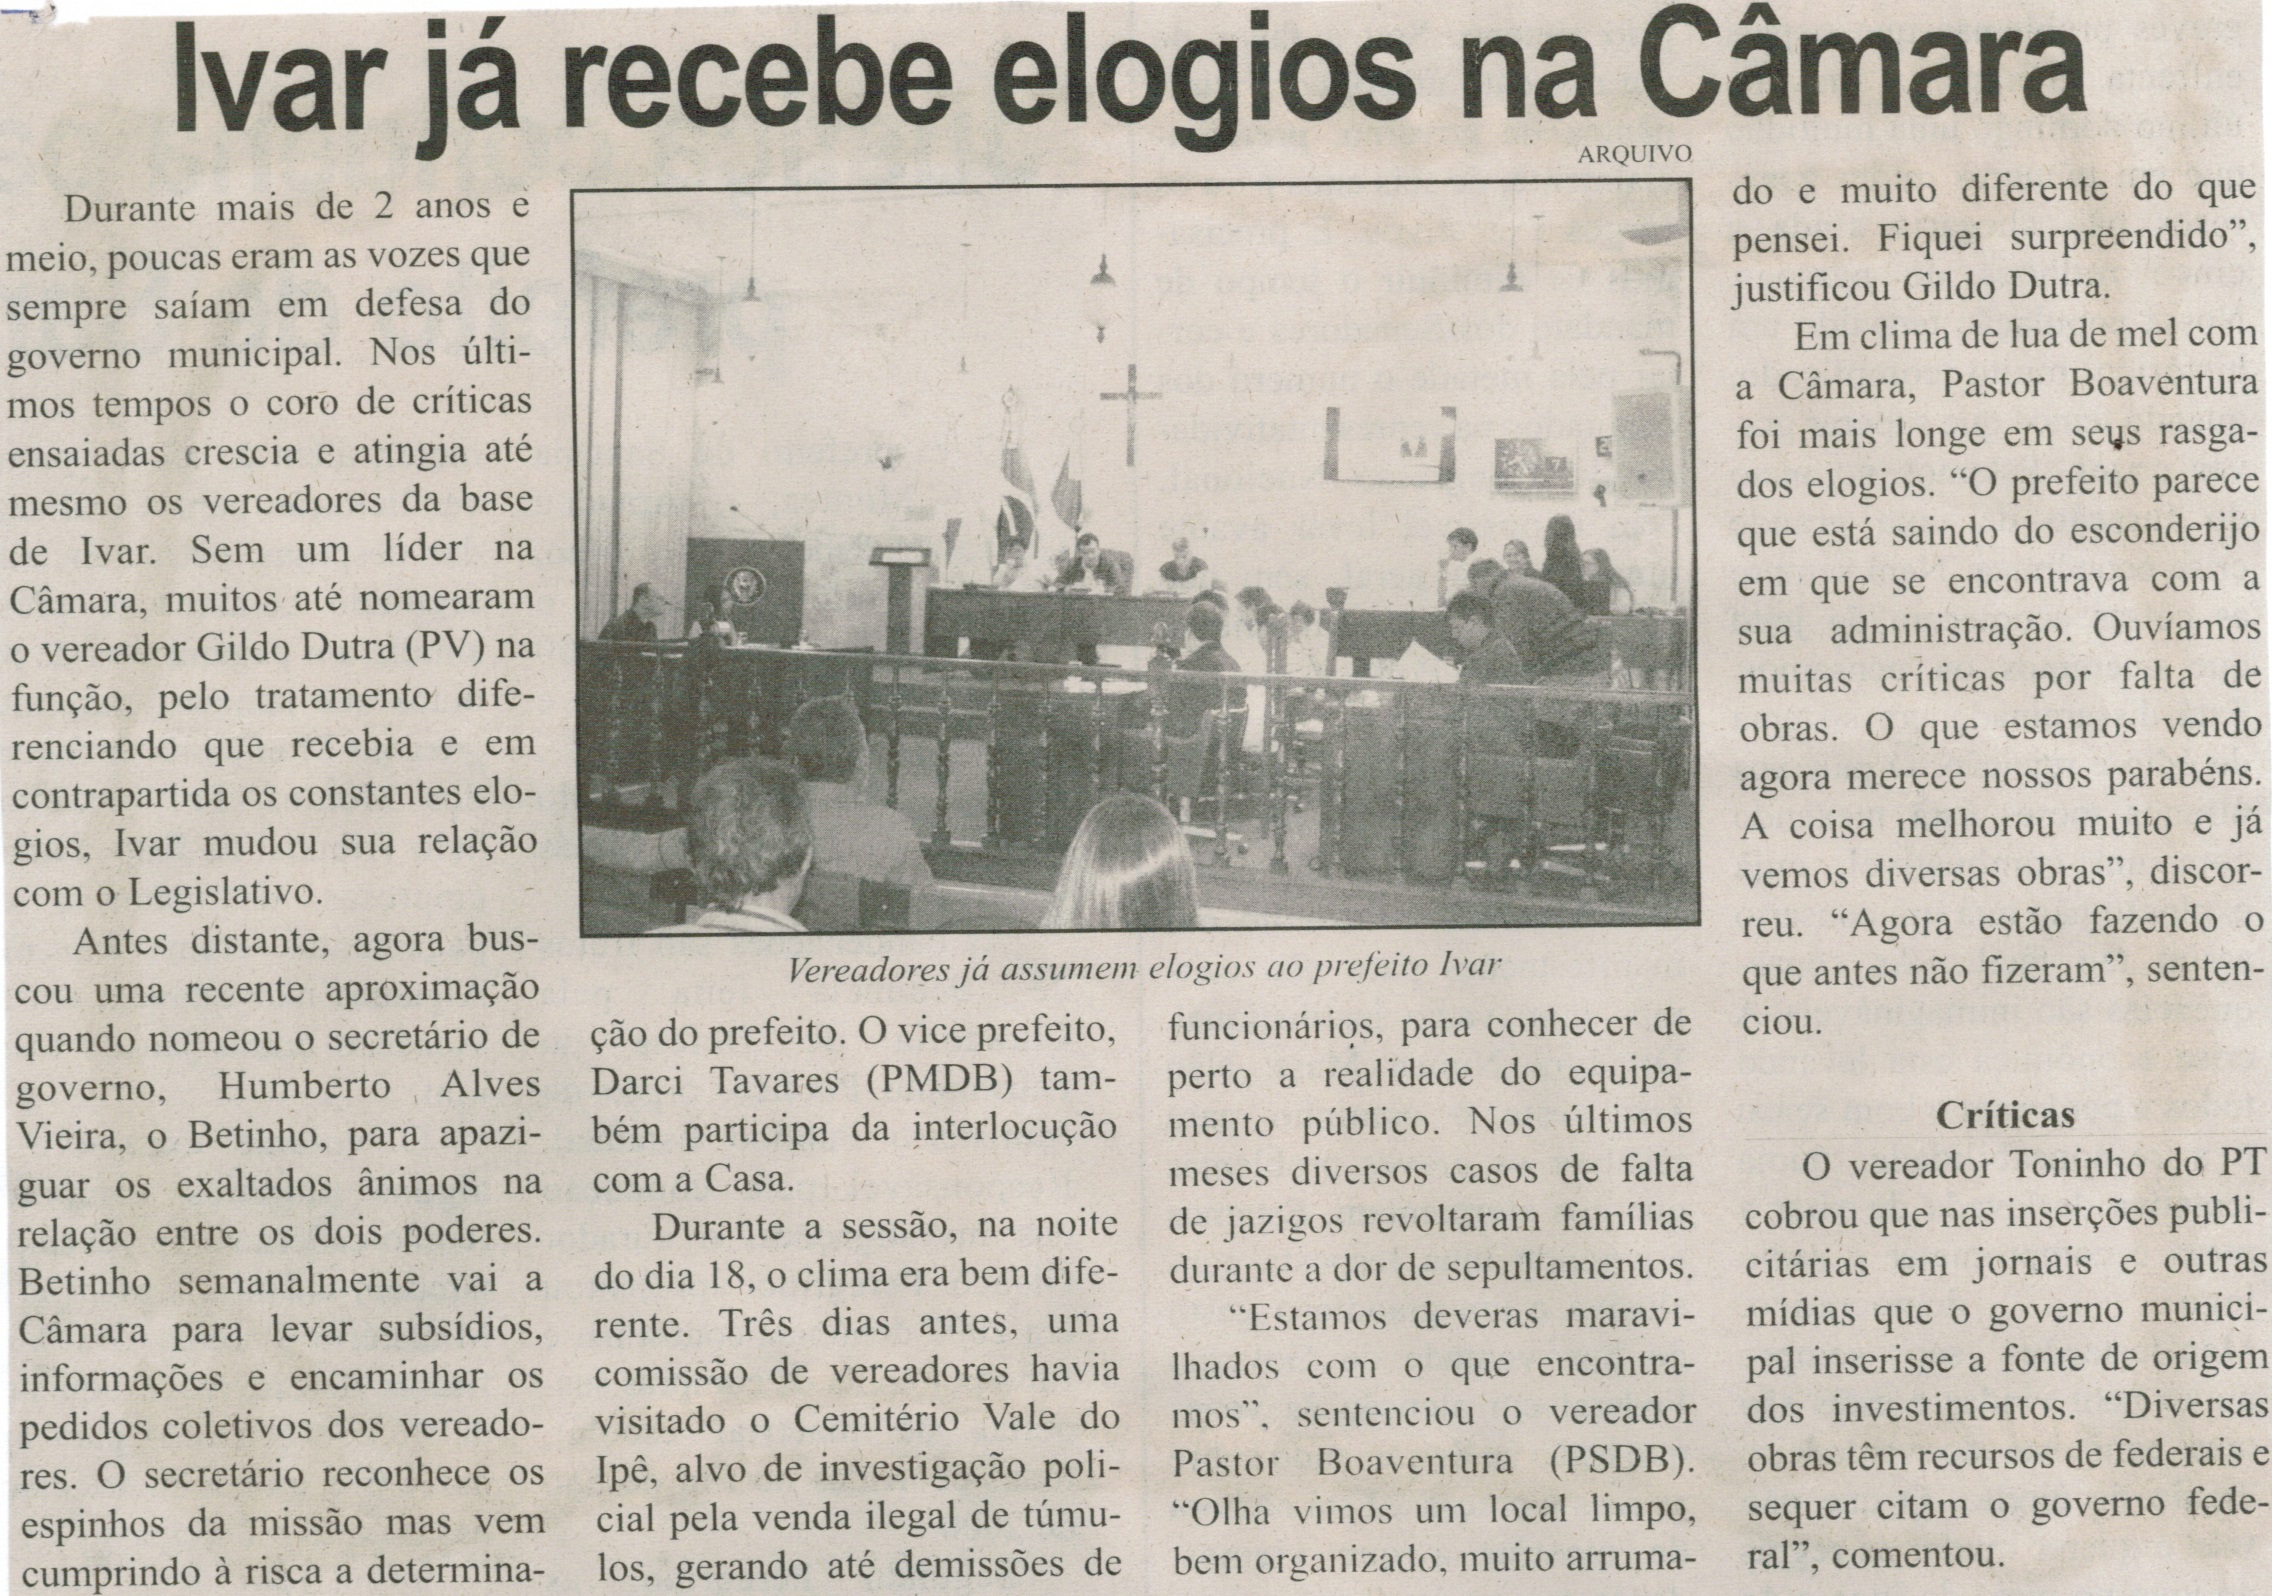 Ivar já recebe elogios na Câmara. Jornal Correio de Minas, Conselheiro Lafaiete, 22 ago. 2015, p. 03.